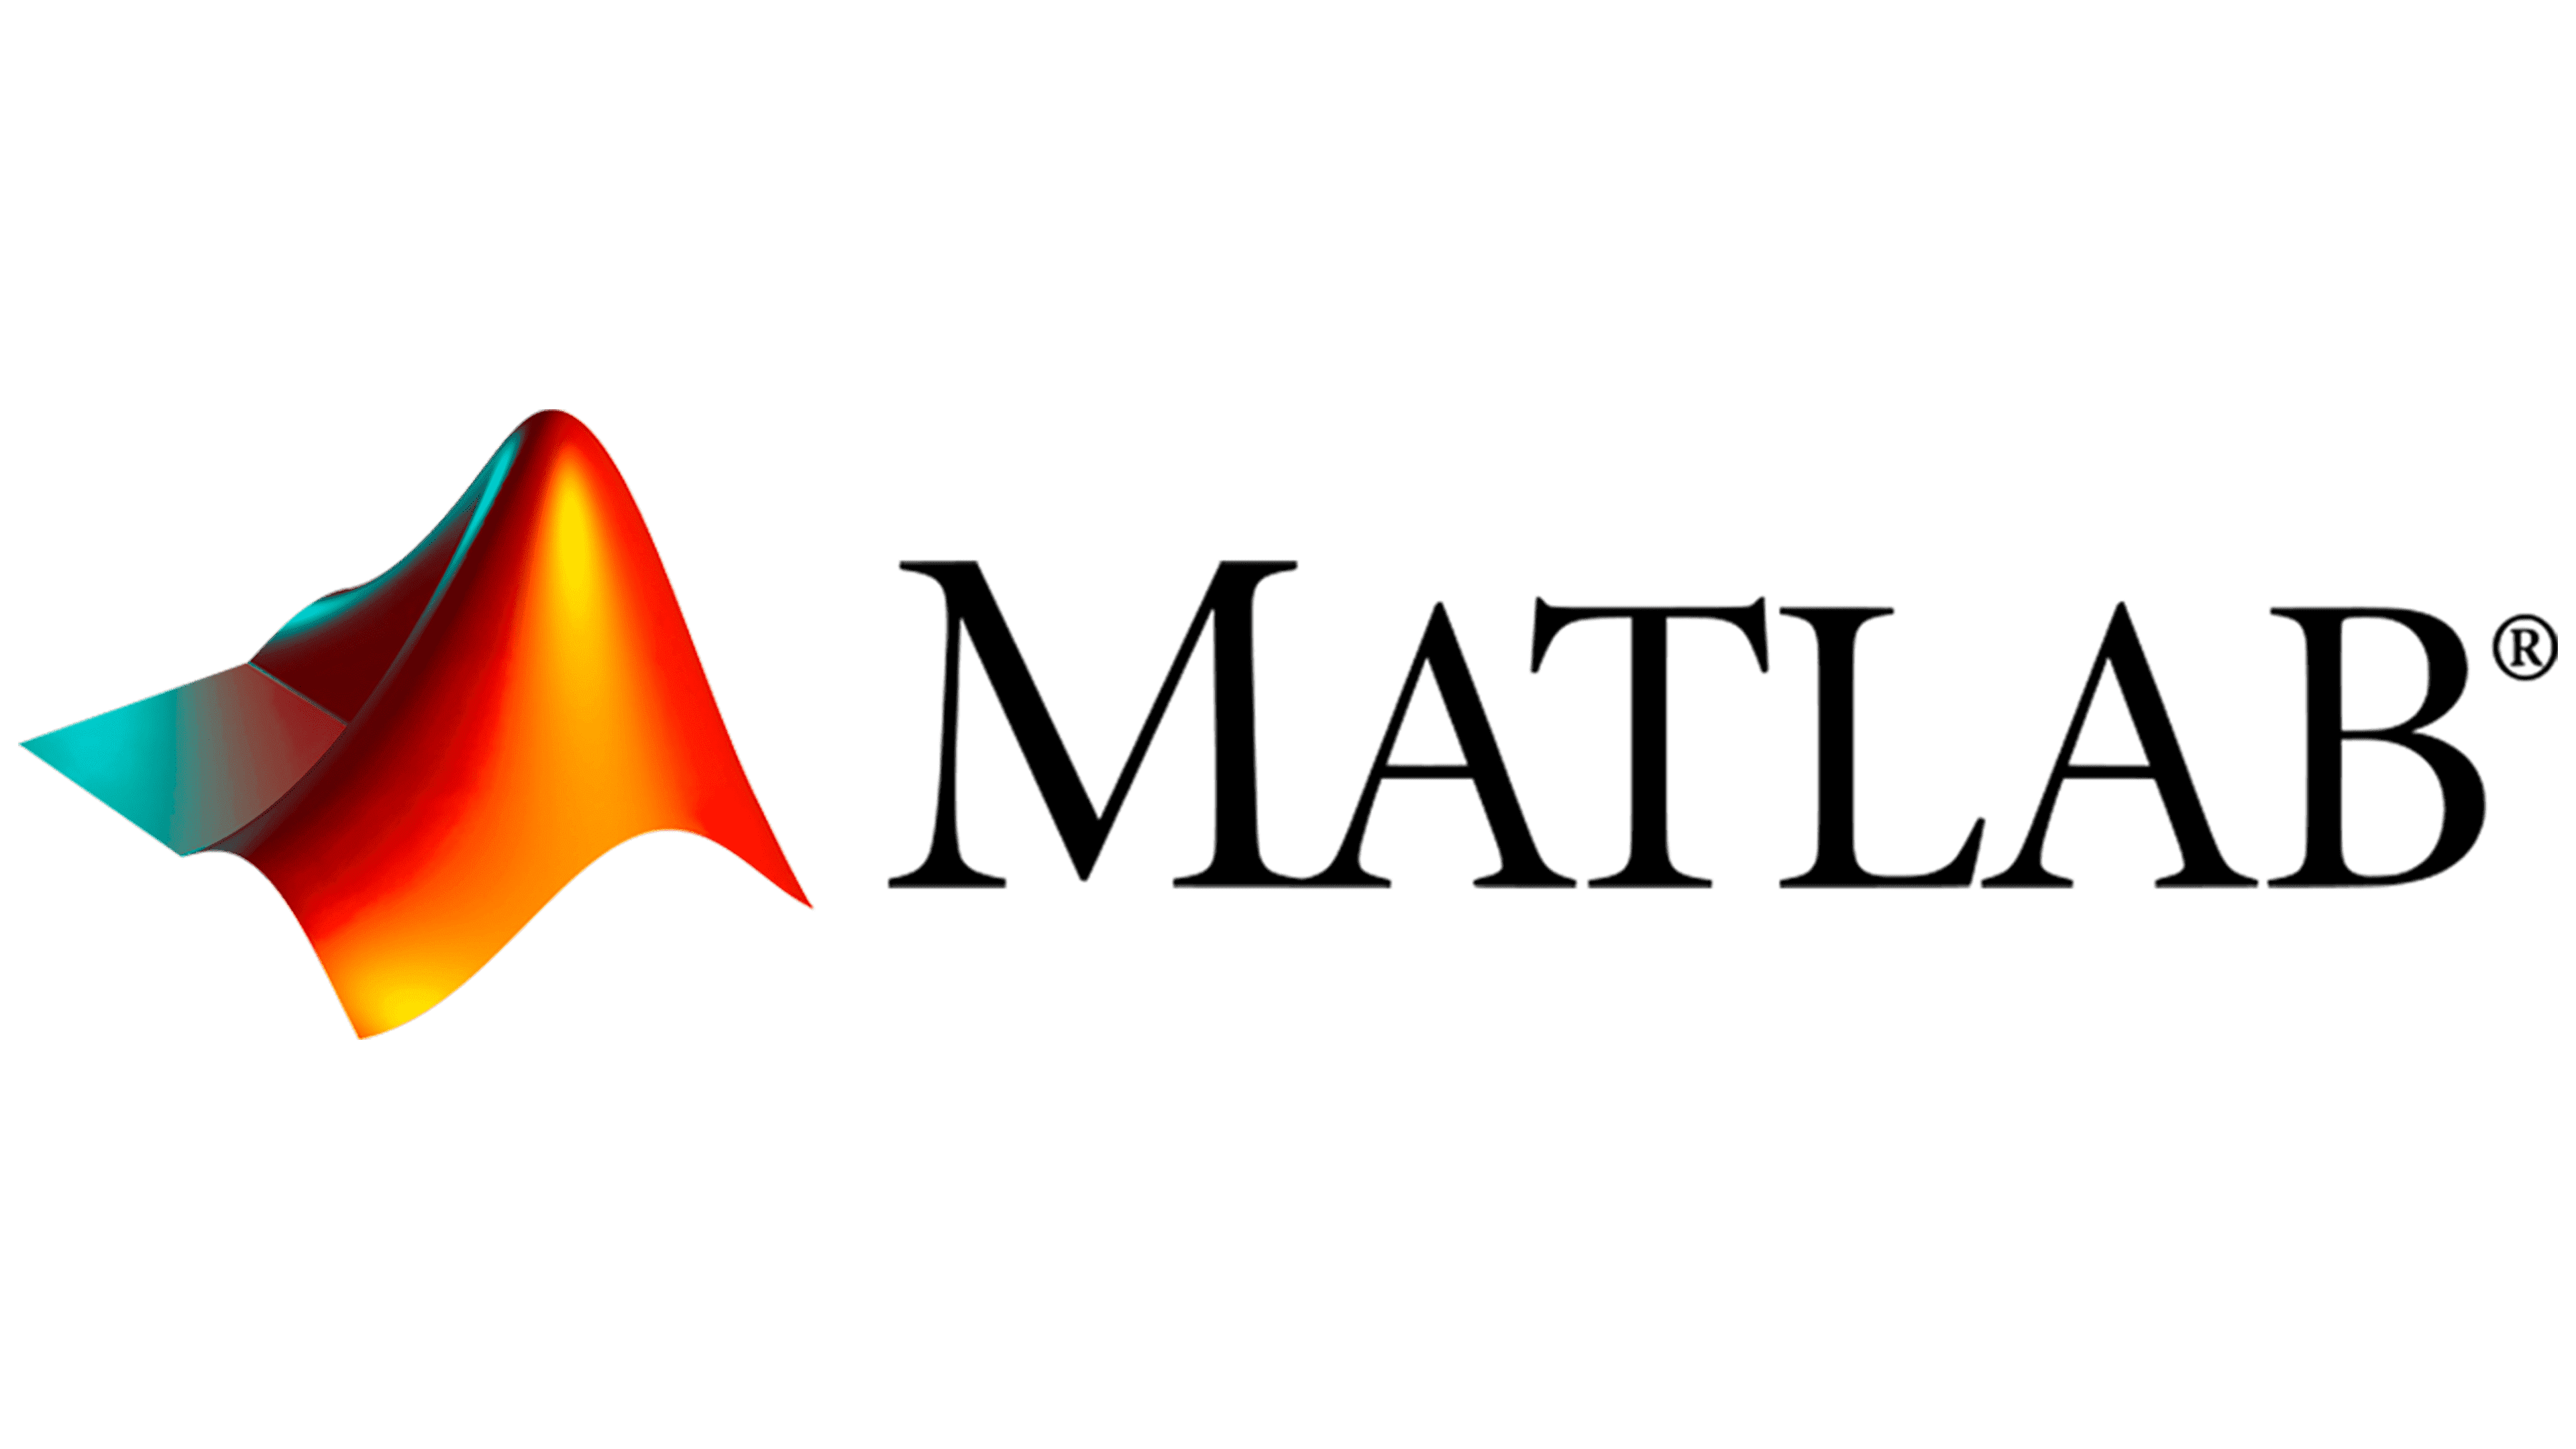 Matlab là gì? Hệ thống của ngôn ngữ lập trình Matlab